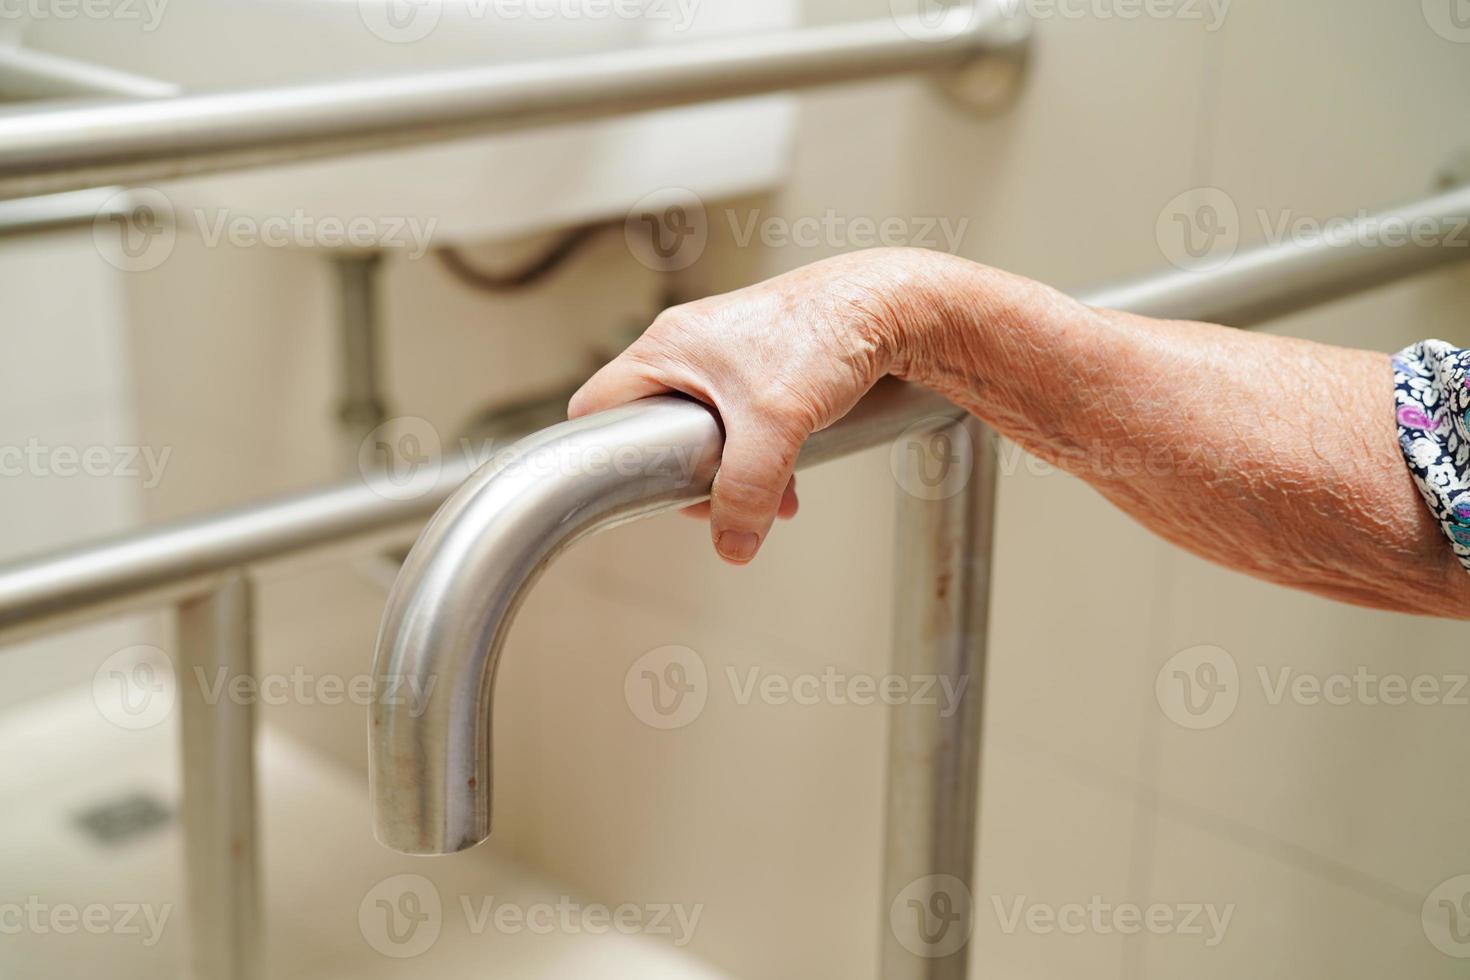 una anciana asiática usa un riel de soporte para el inodoro en el baño, barra de seguridad para pasamanos, seguridad en el hospital de enfermería. foto